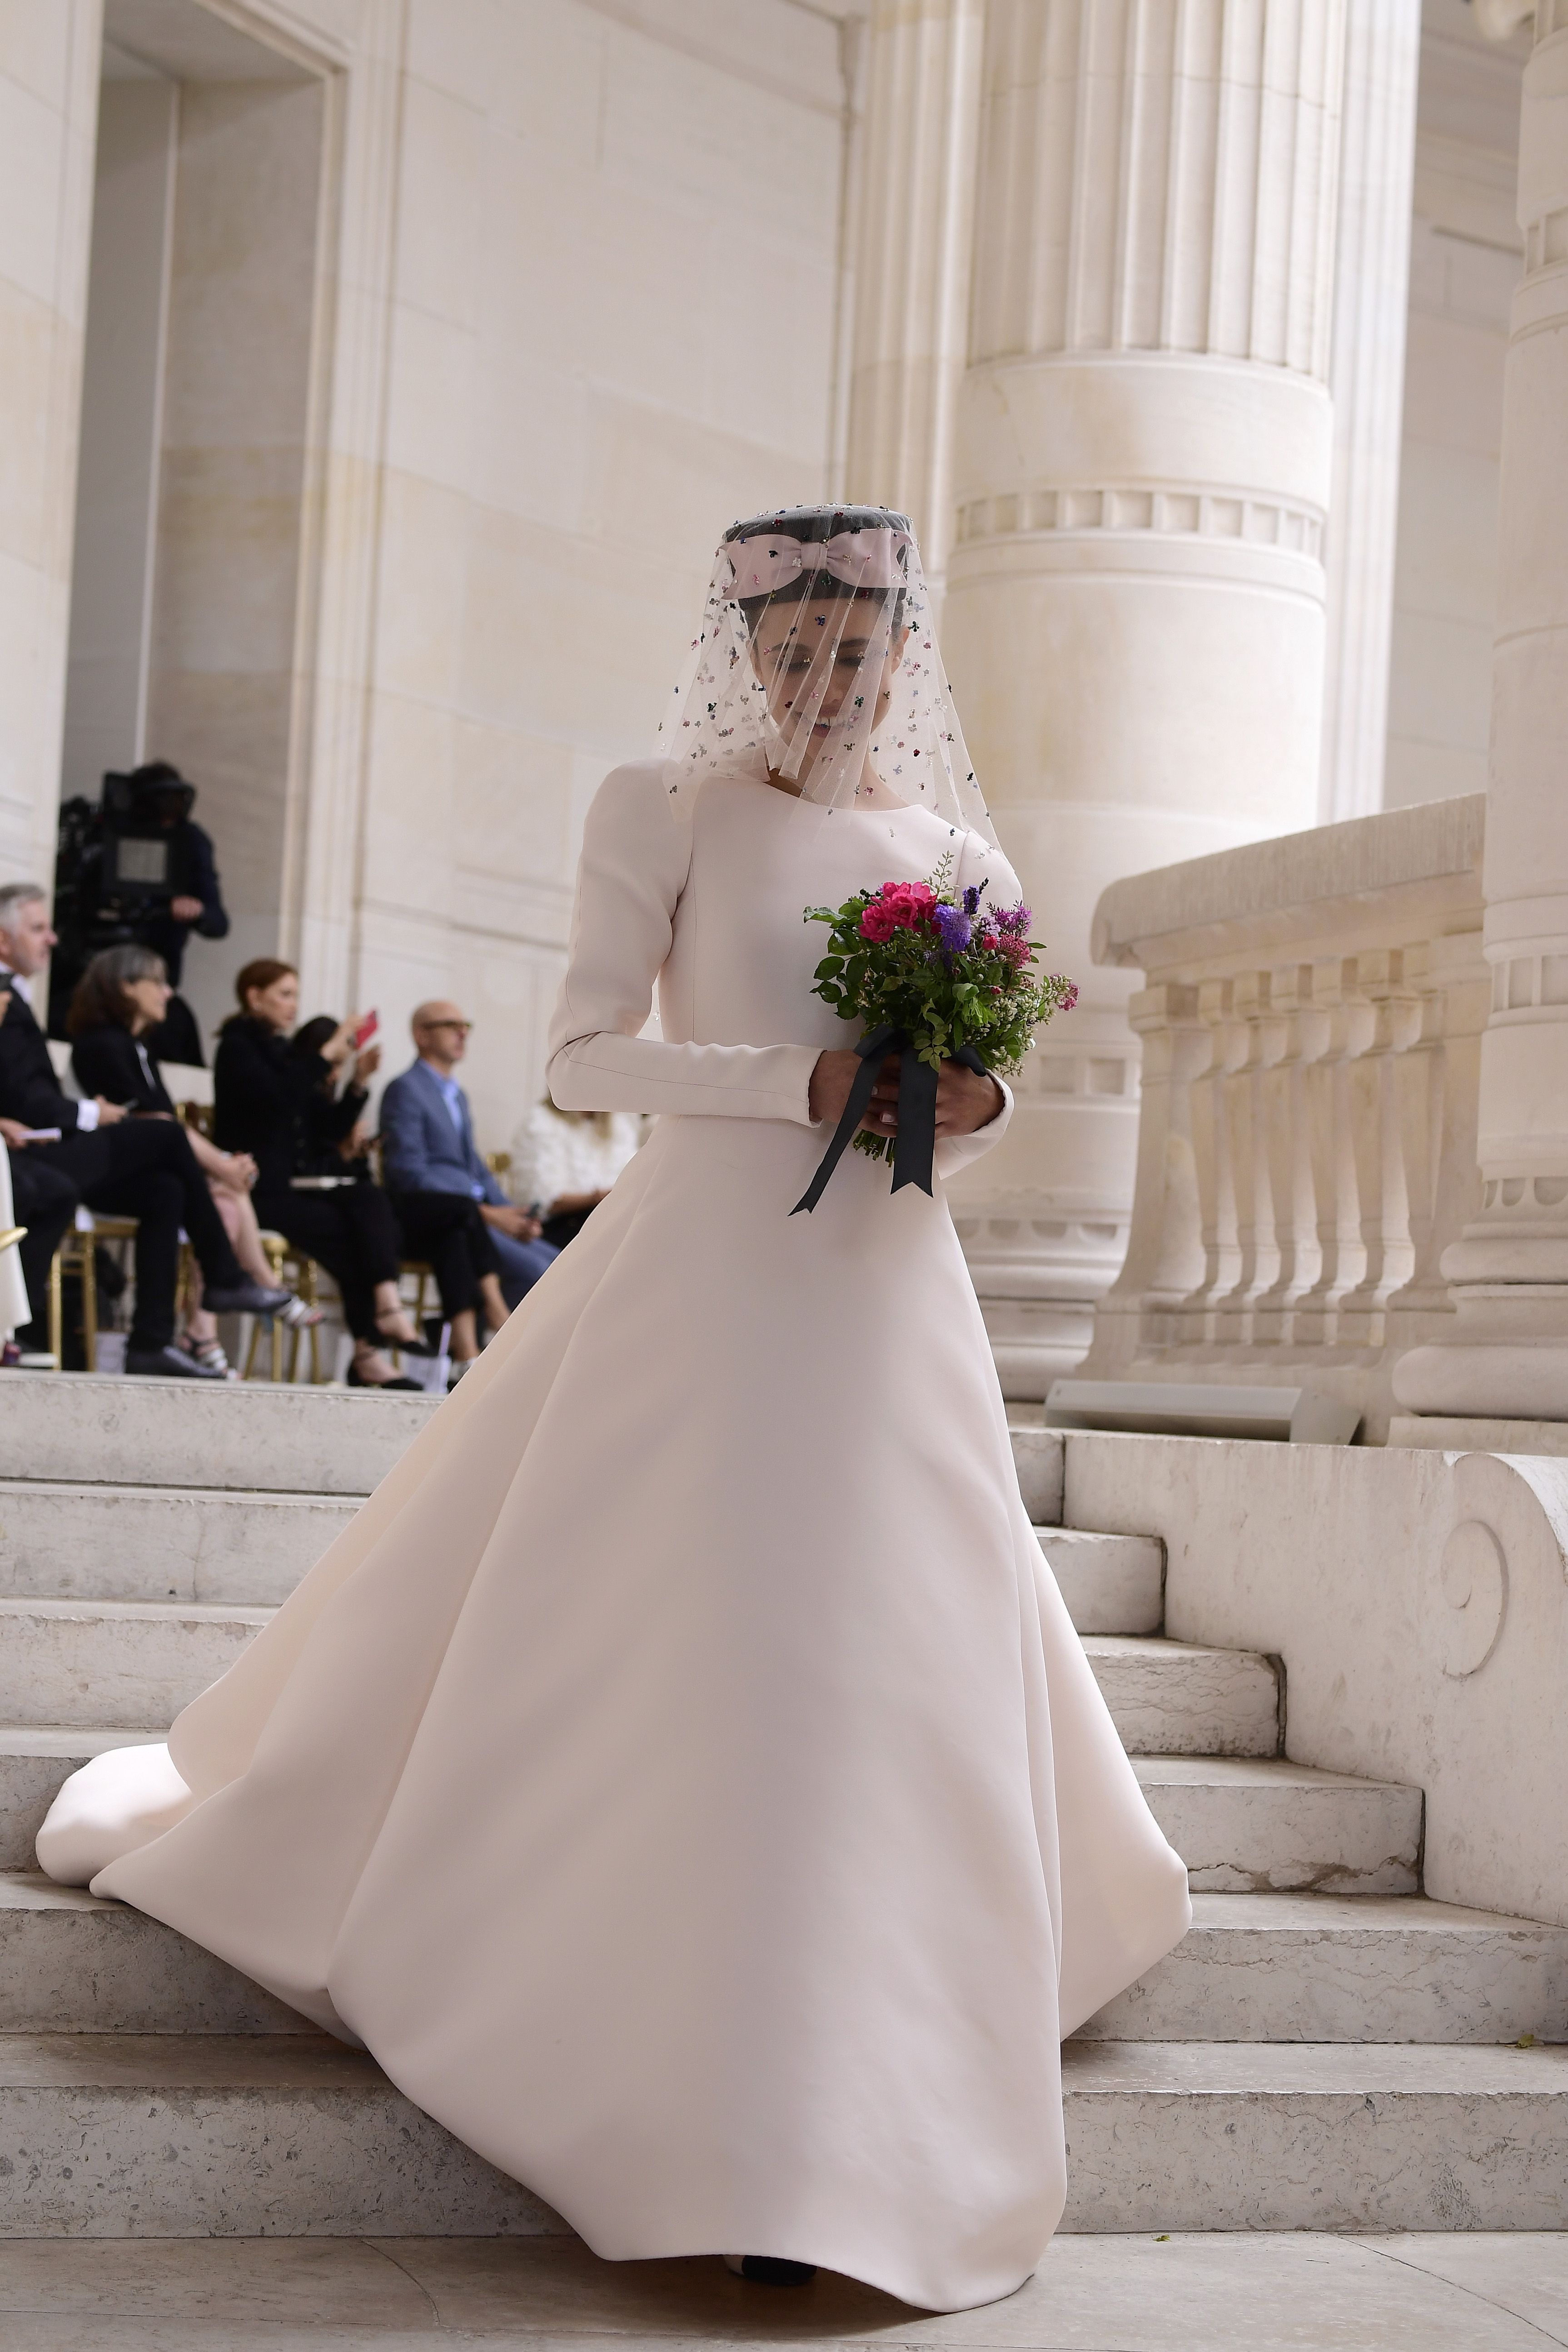 Producción Faringe saludo 10 vestidos de novia de Chanel preciosos que serán la mejor inspiración